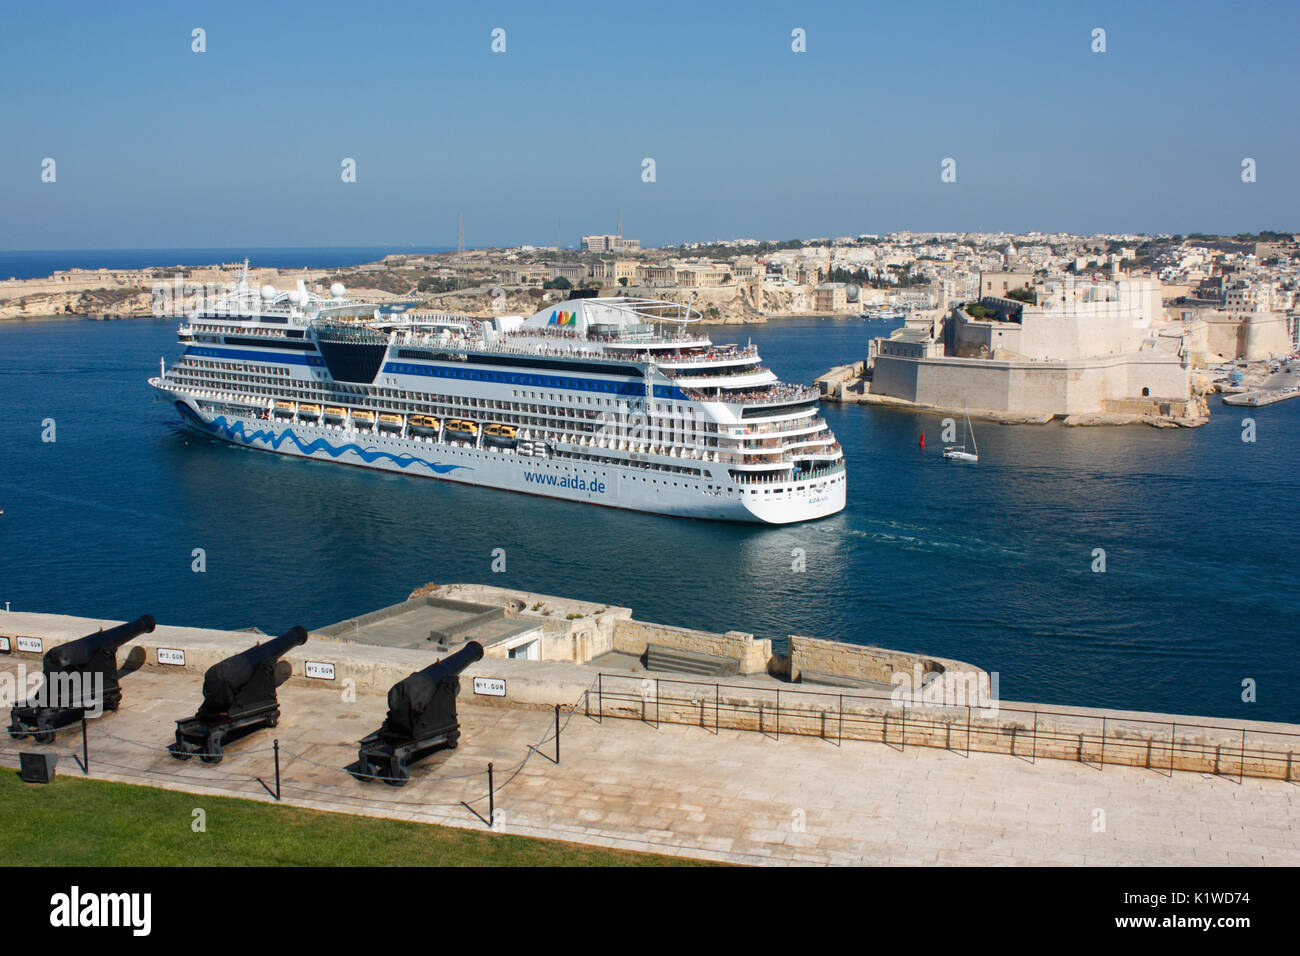 Mittelmeer Reise und Tourismus. Das kreuzfahrtschiff oder liner AIDAstella Abfahrt vom großen Hafen in Malta Stockfoto